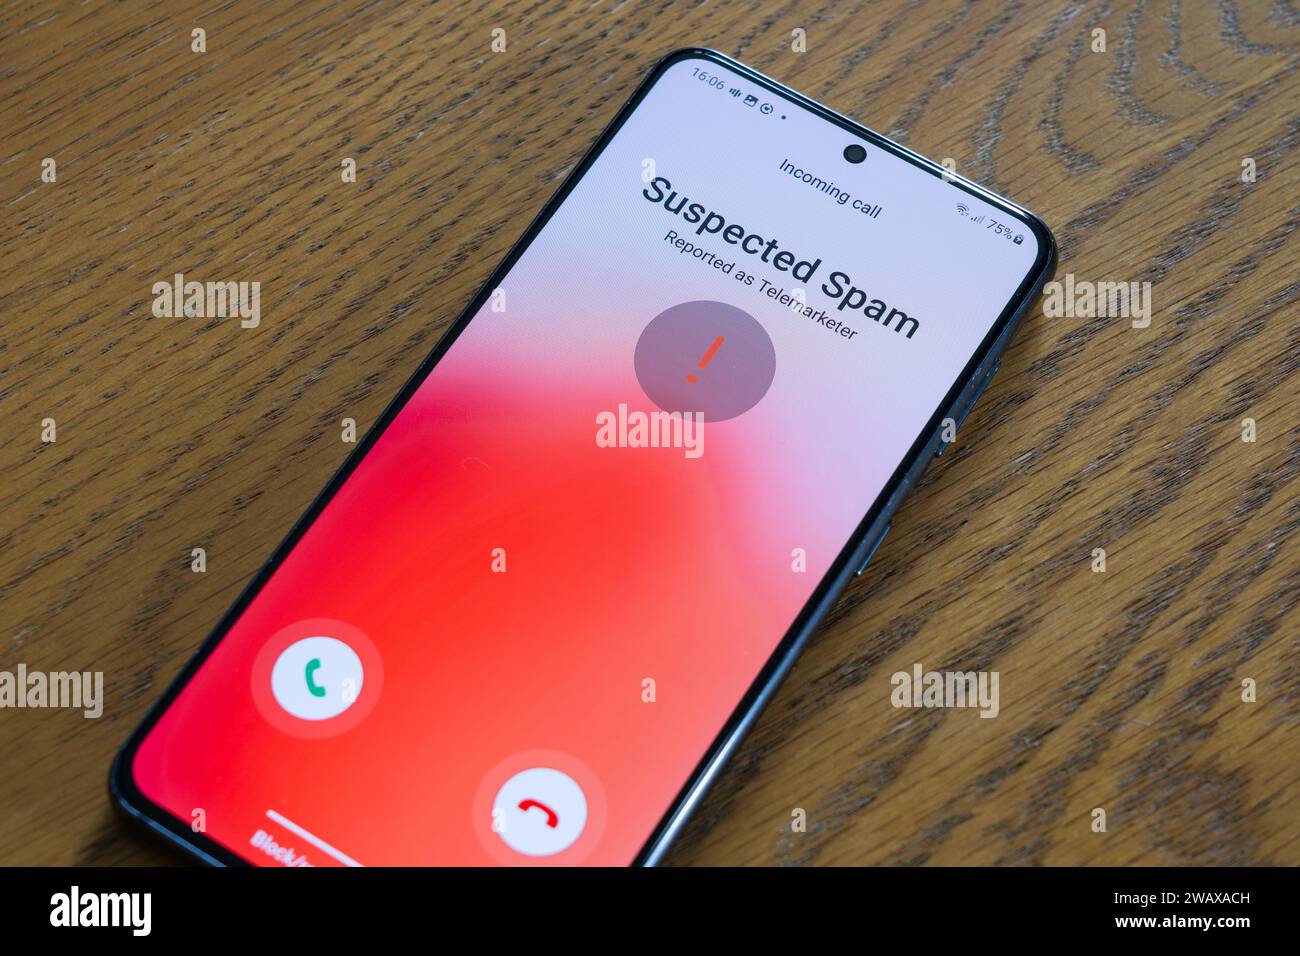 Ein Smartphone-Bildschirm, der einen eingehenden mutmaßlichen Spam-Anruf anzeigt, der als Telemarketer gemeldet wurde, Großbritannien. Thema: Belästigende Anrufe, kalte Anrufe, Spam-Anrufe, Telemarketer Stockfoto